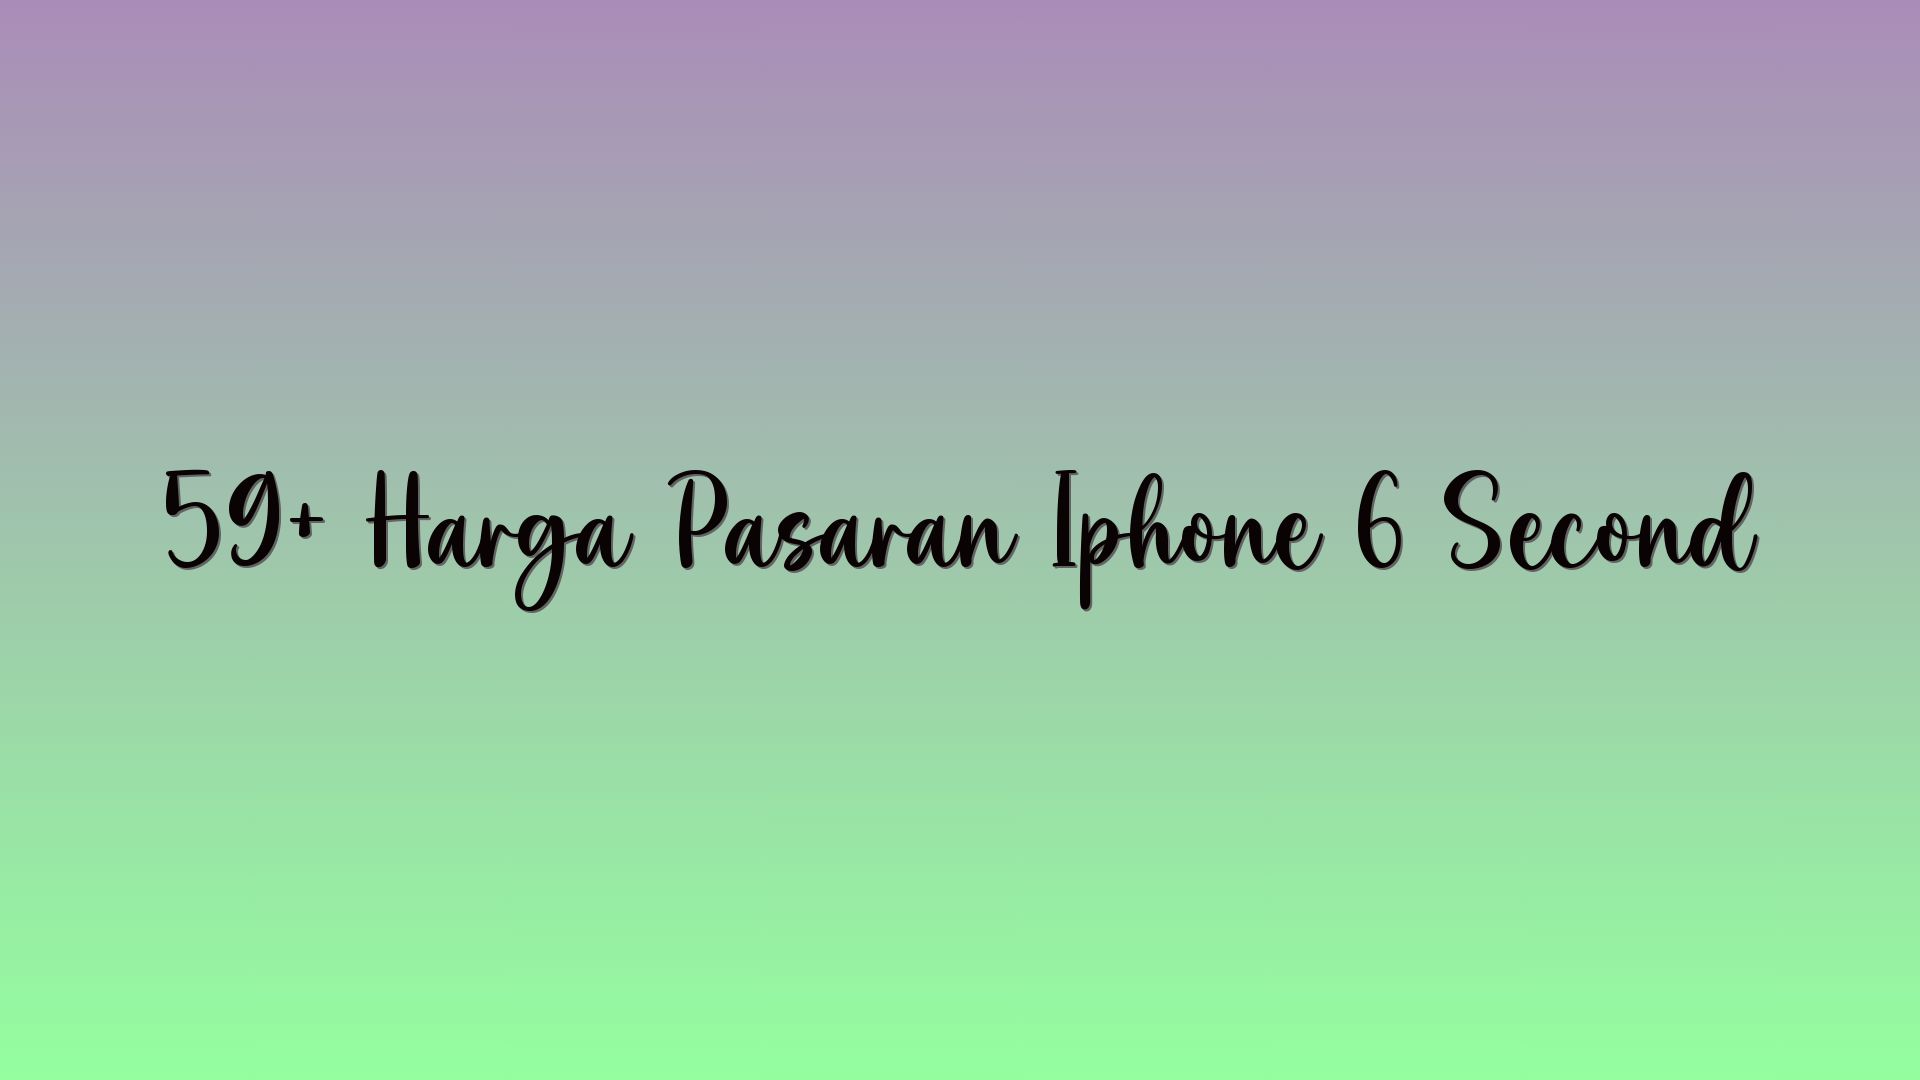 59+ Harga Pasaran Iphone 6 Second